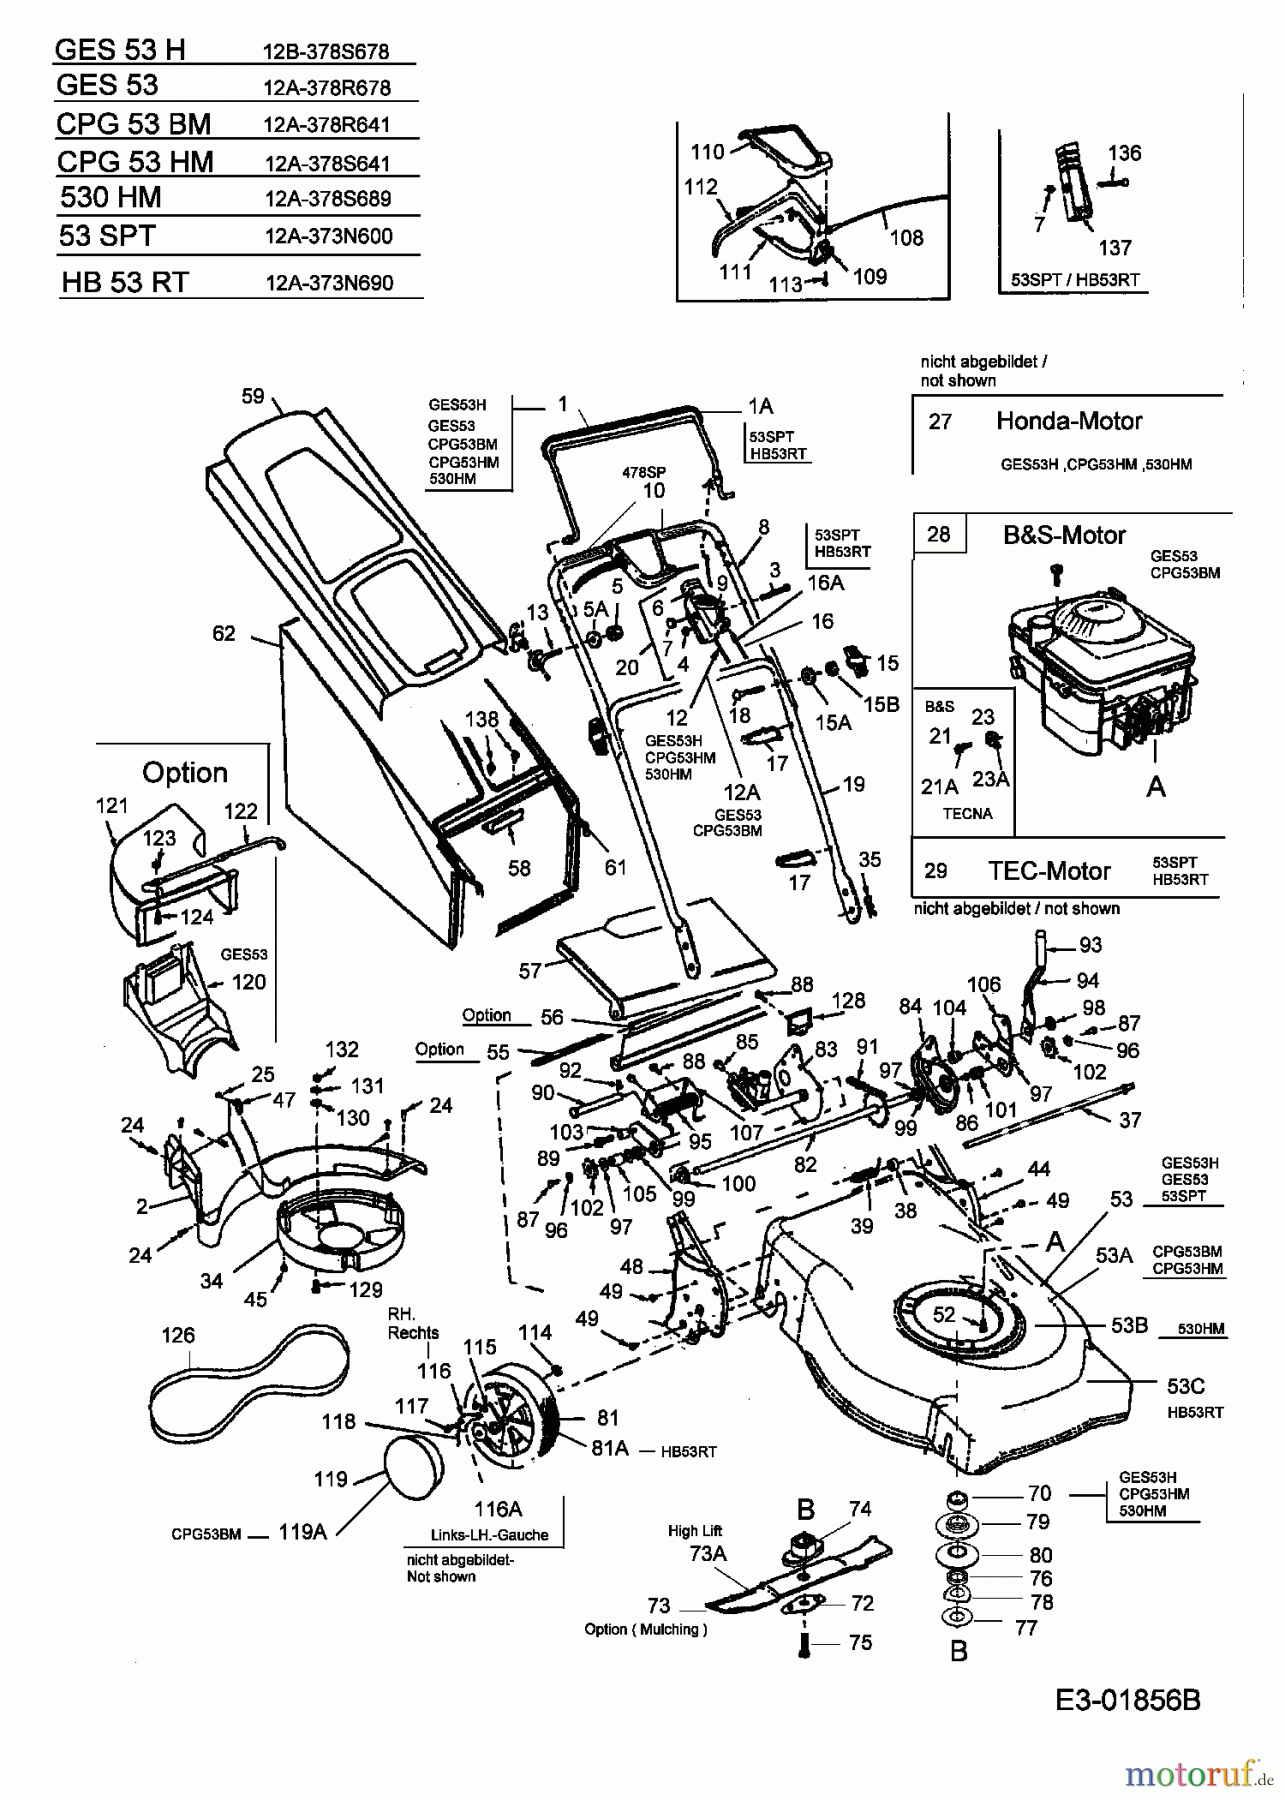  MTD Motormäher mit Antrieb 53 SPT 12A-373N600  (2004) Grundgerät